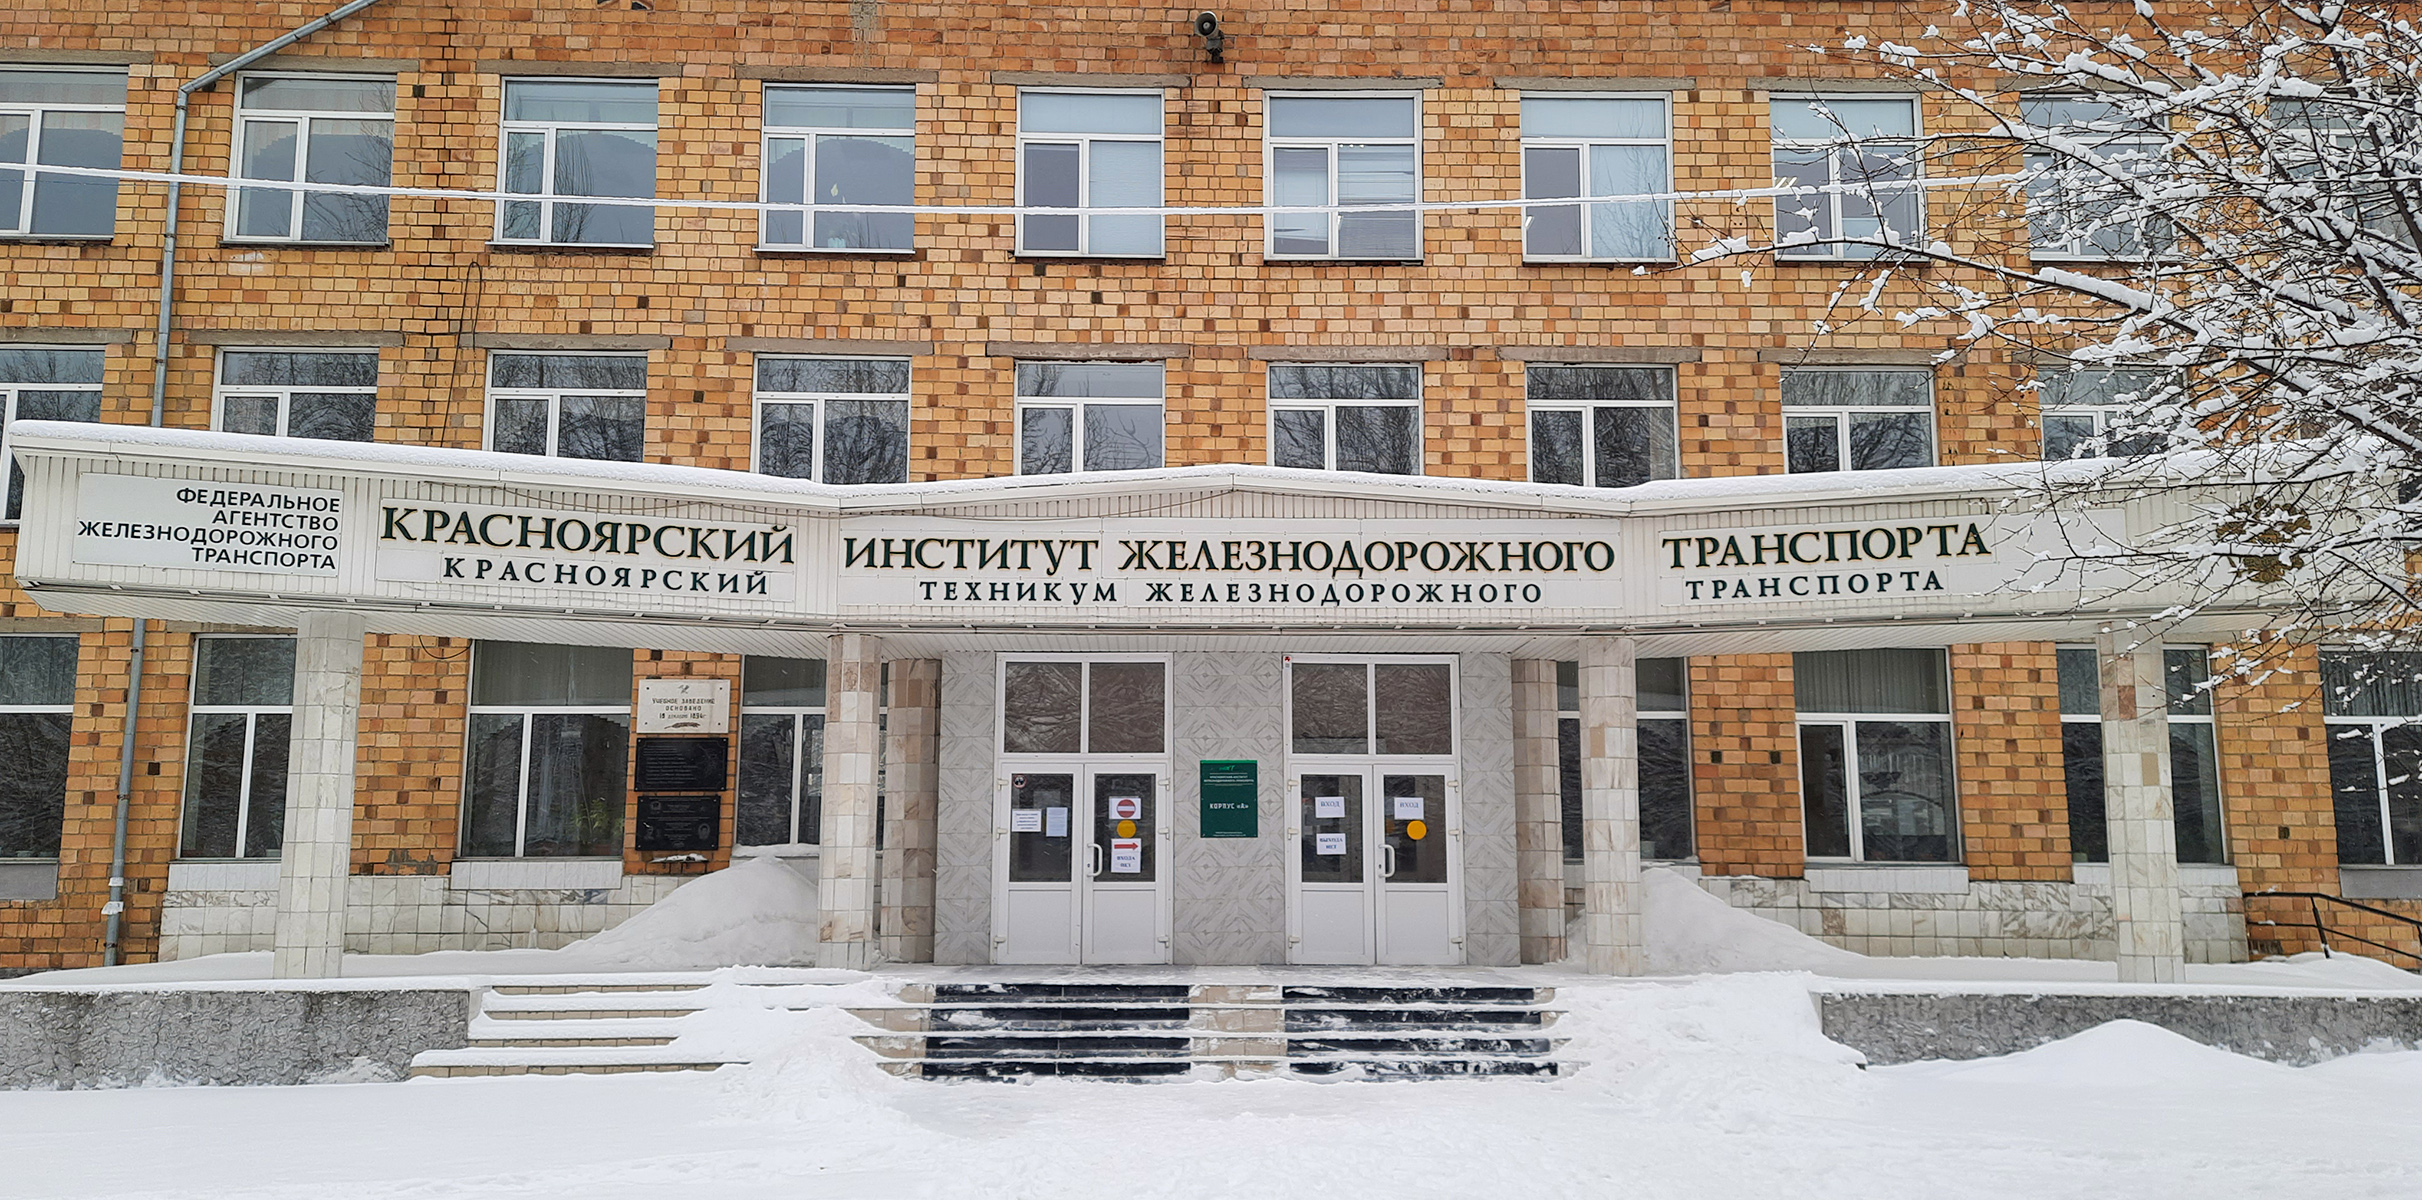 Встреча с представители Красноярского института и техникума железнодорожного транспорта.